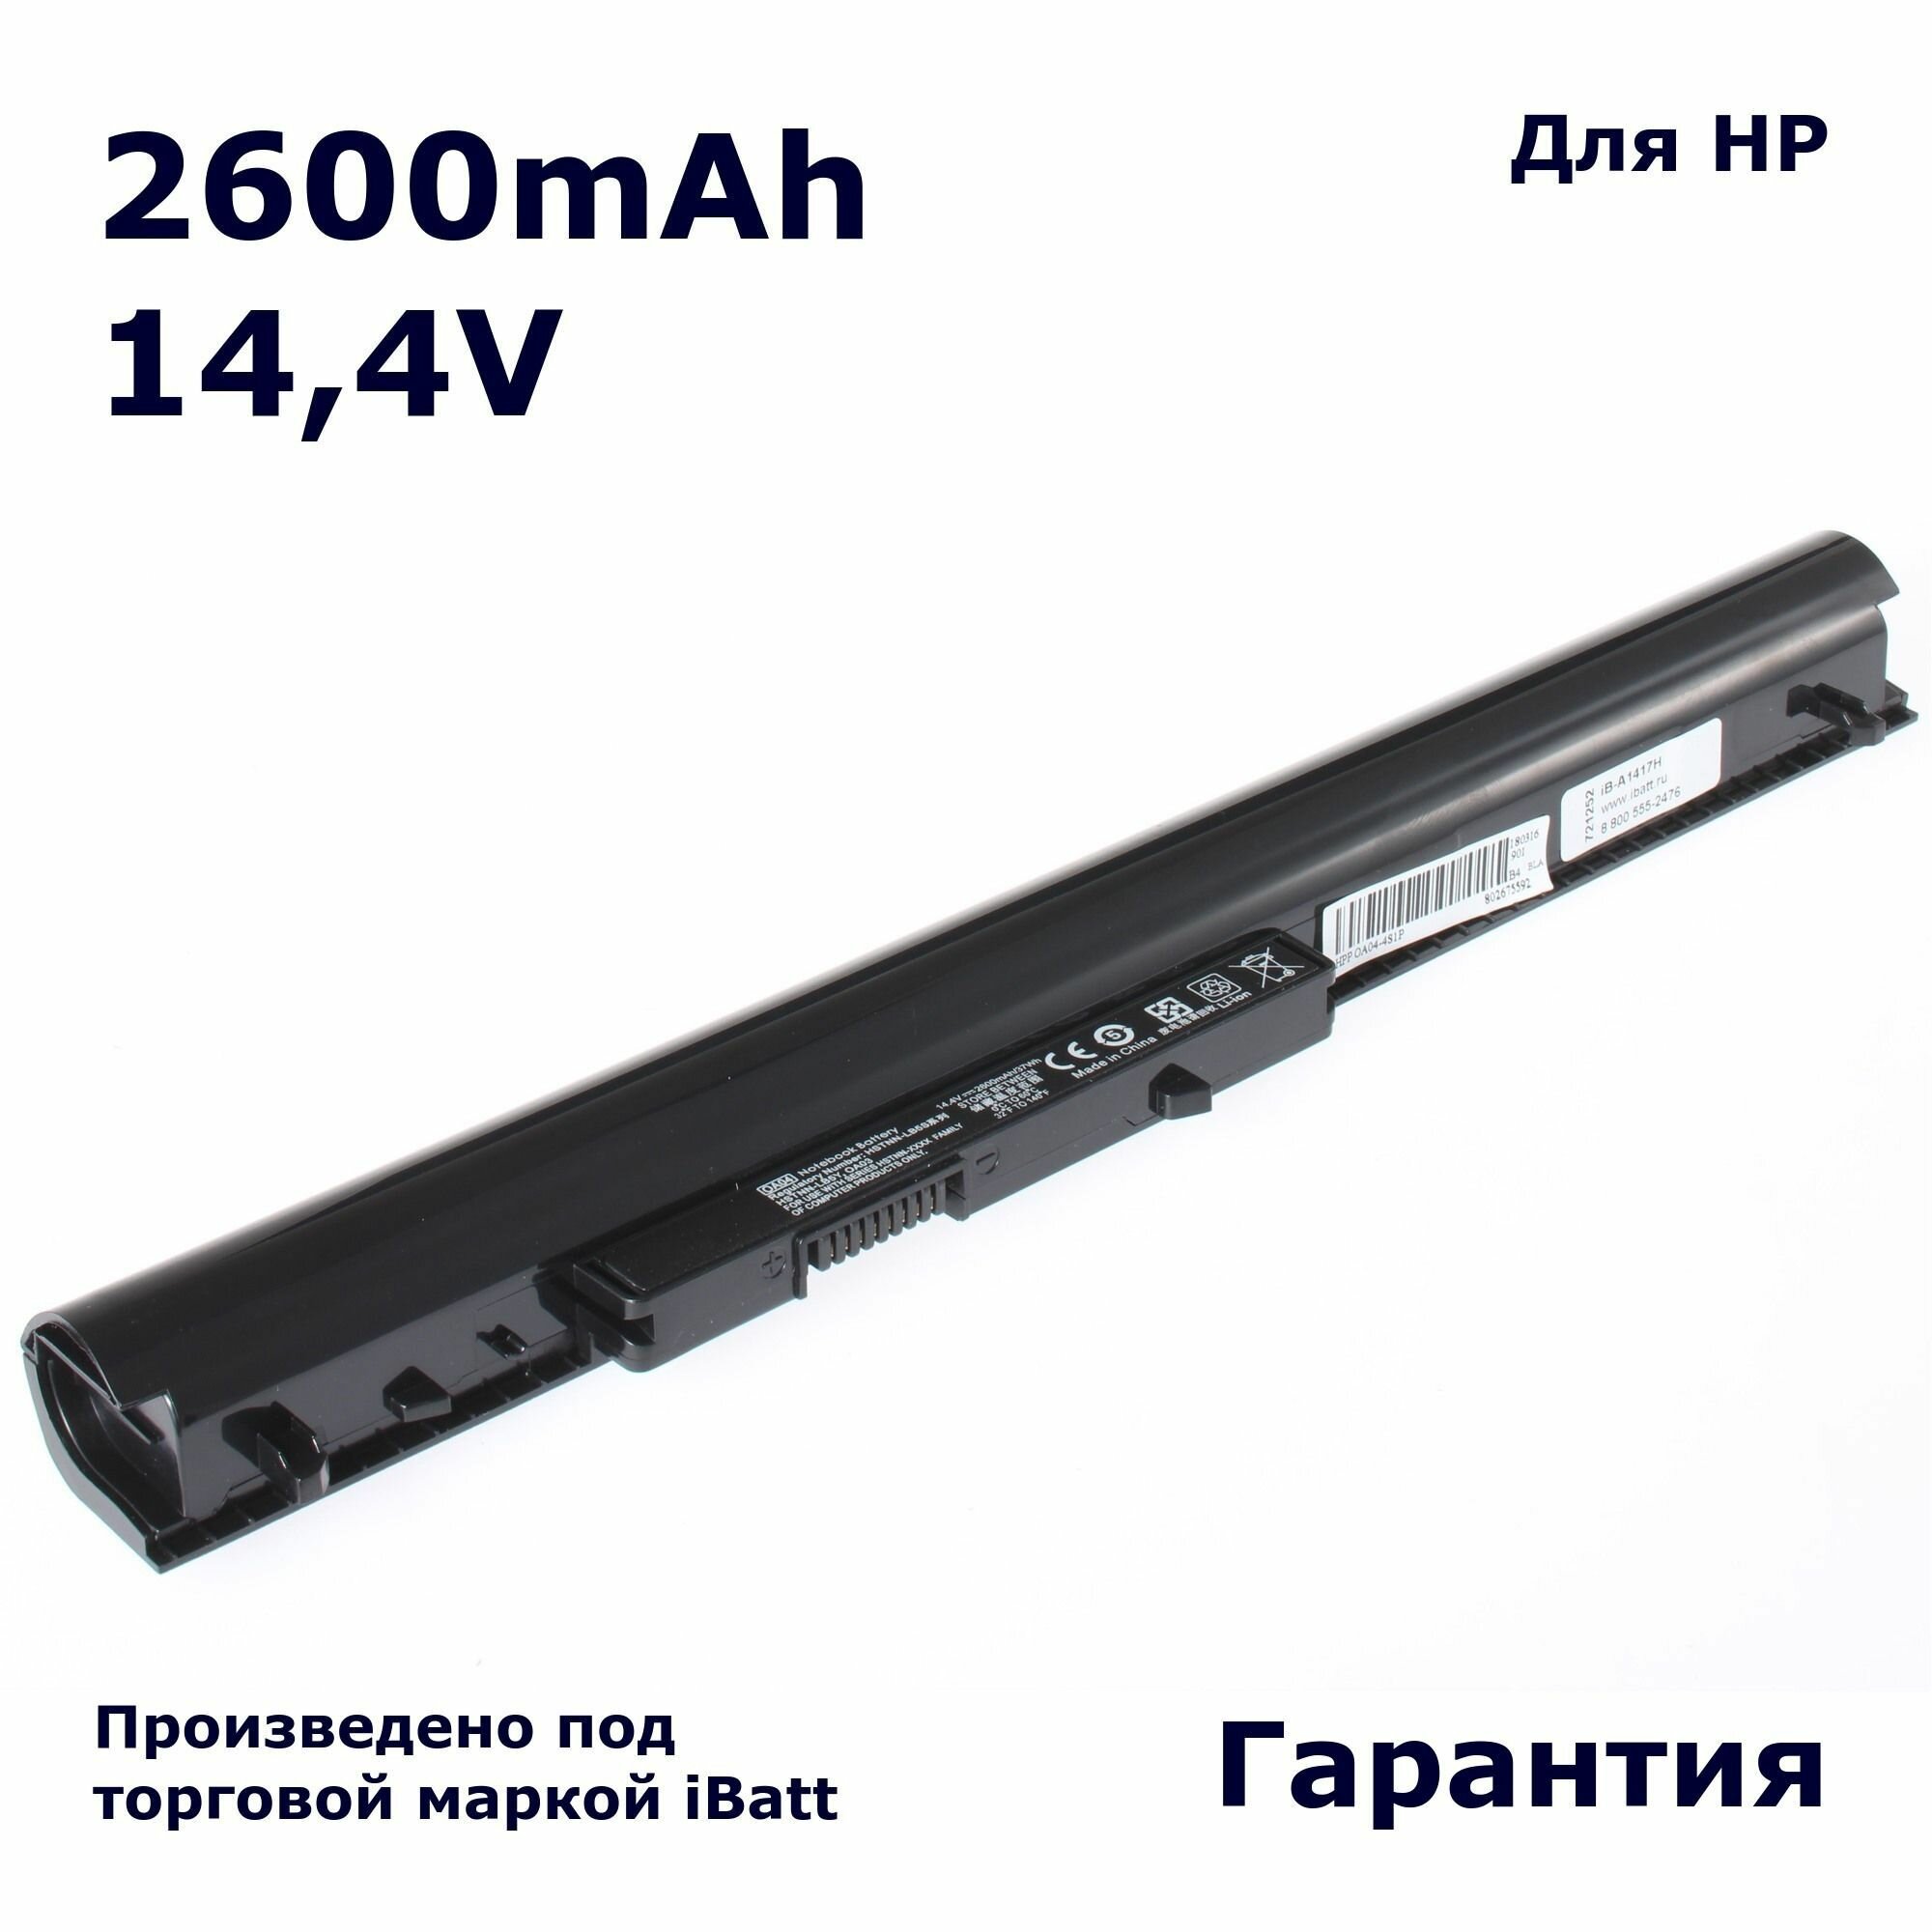 Аккумулятор iBatt 2600mAh для ноутбука HP-Compaq 15-d000sr